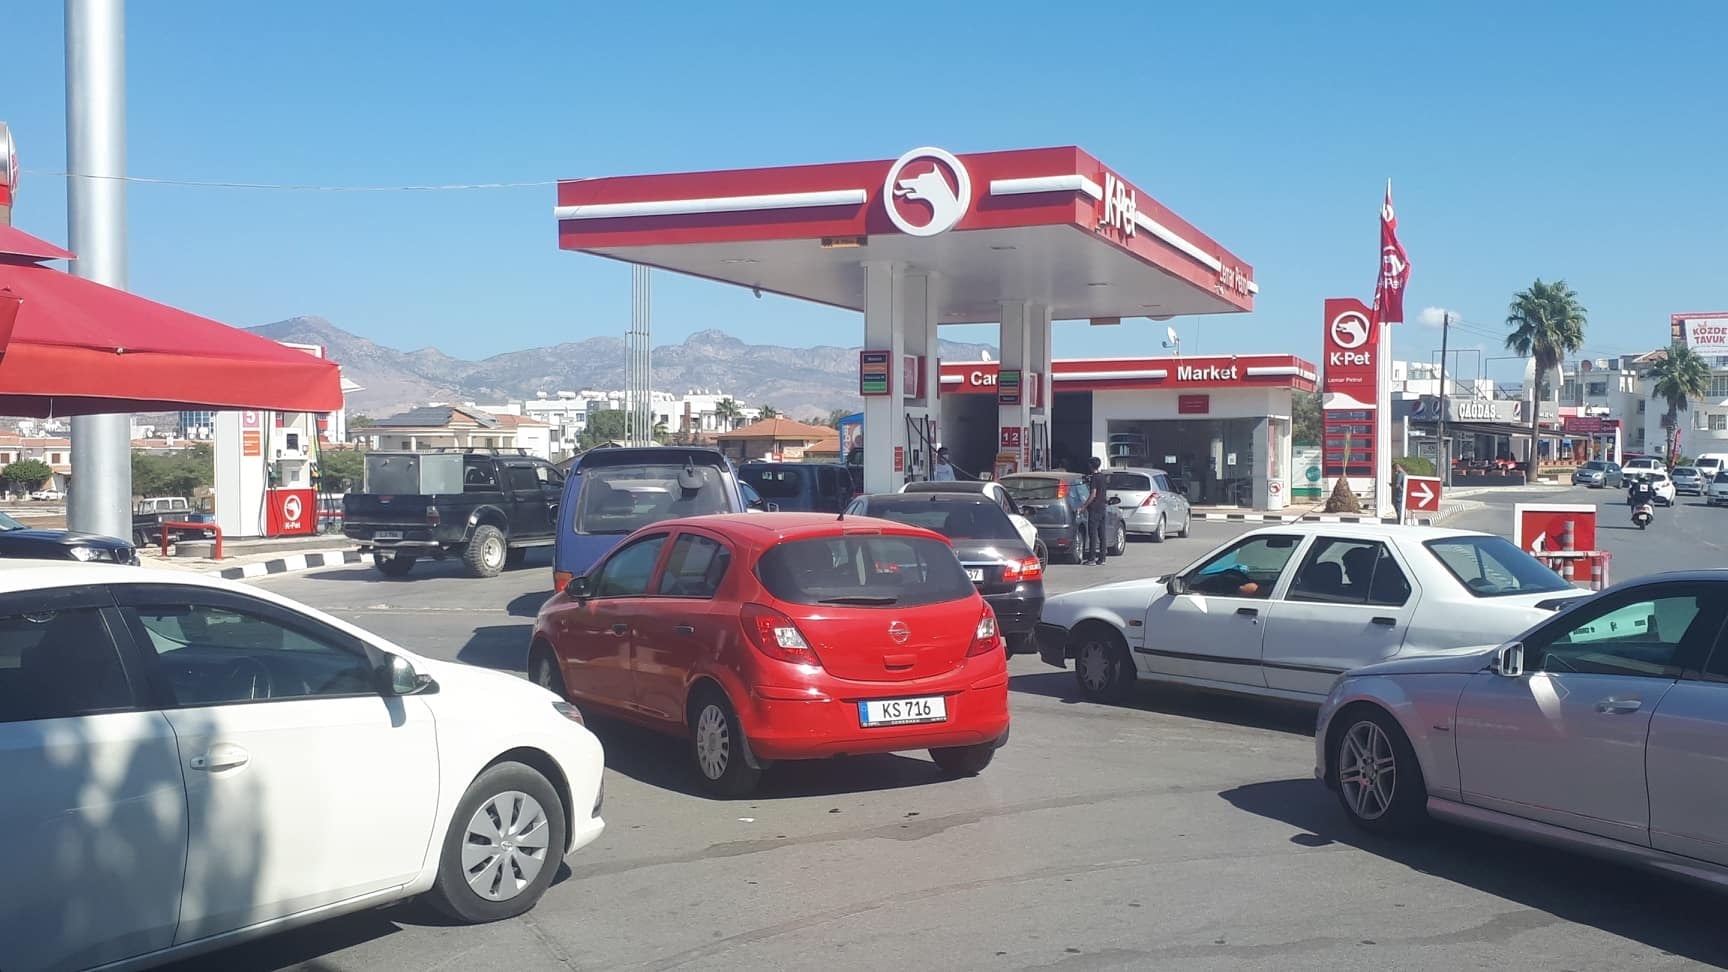 Κύπρος: Ουρές στα βενζινάδικα στα κατεχόμενα – Σταματά η πώληση καυσίμων και γκαζιού